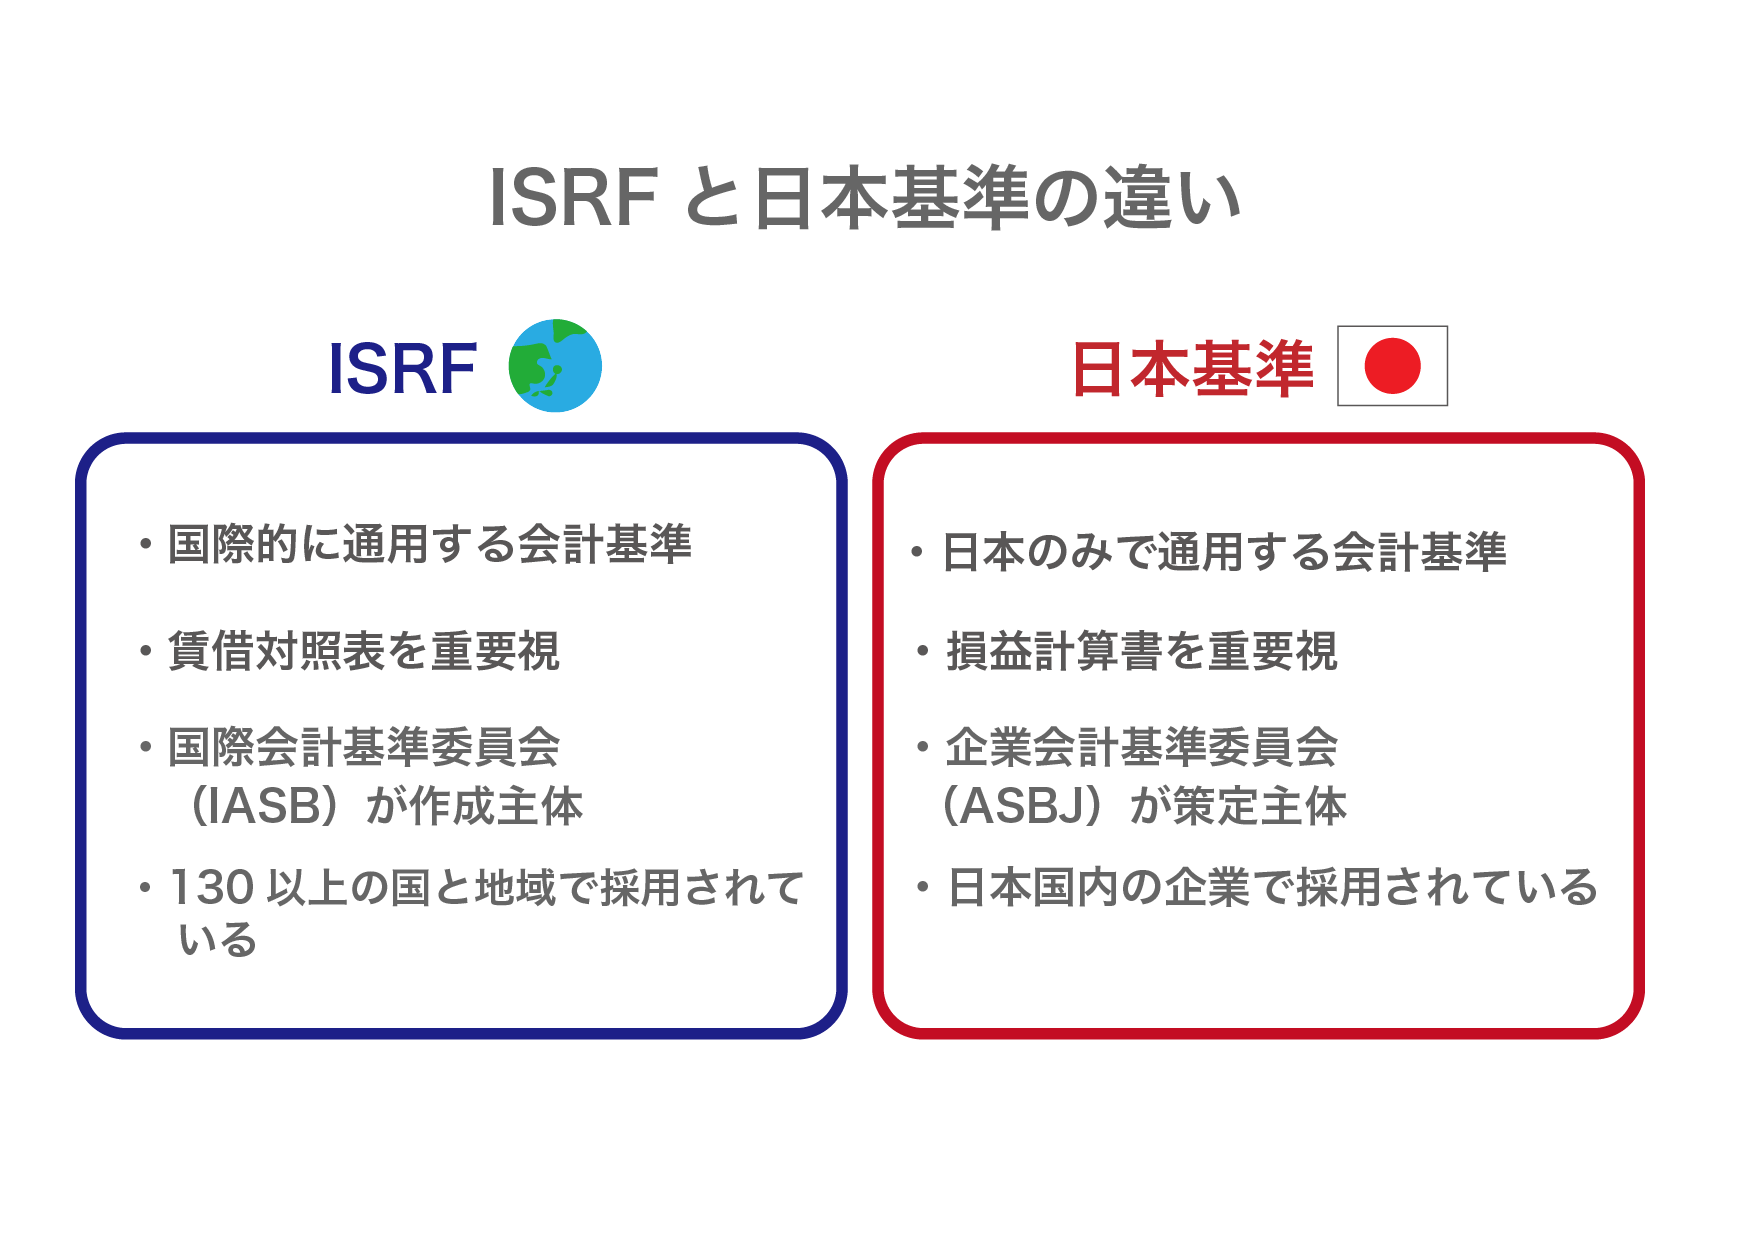 IFRS(国際会計基準)とは? 日本基準との違いや導入のメリットやデメリットを解説